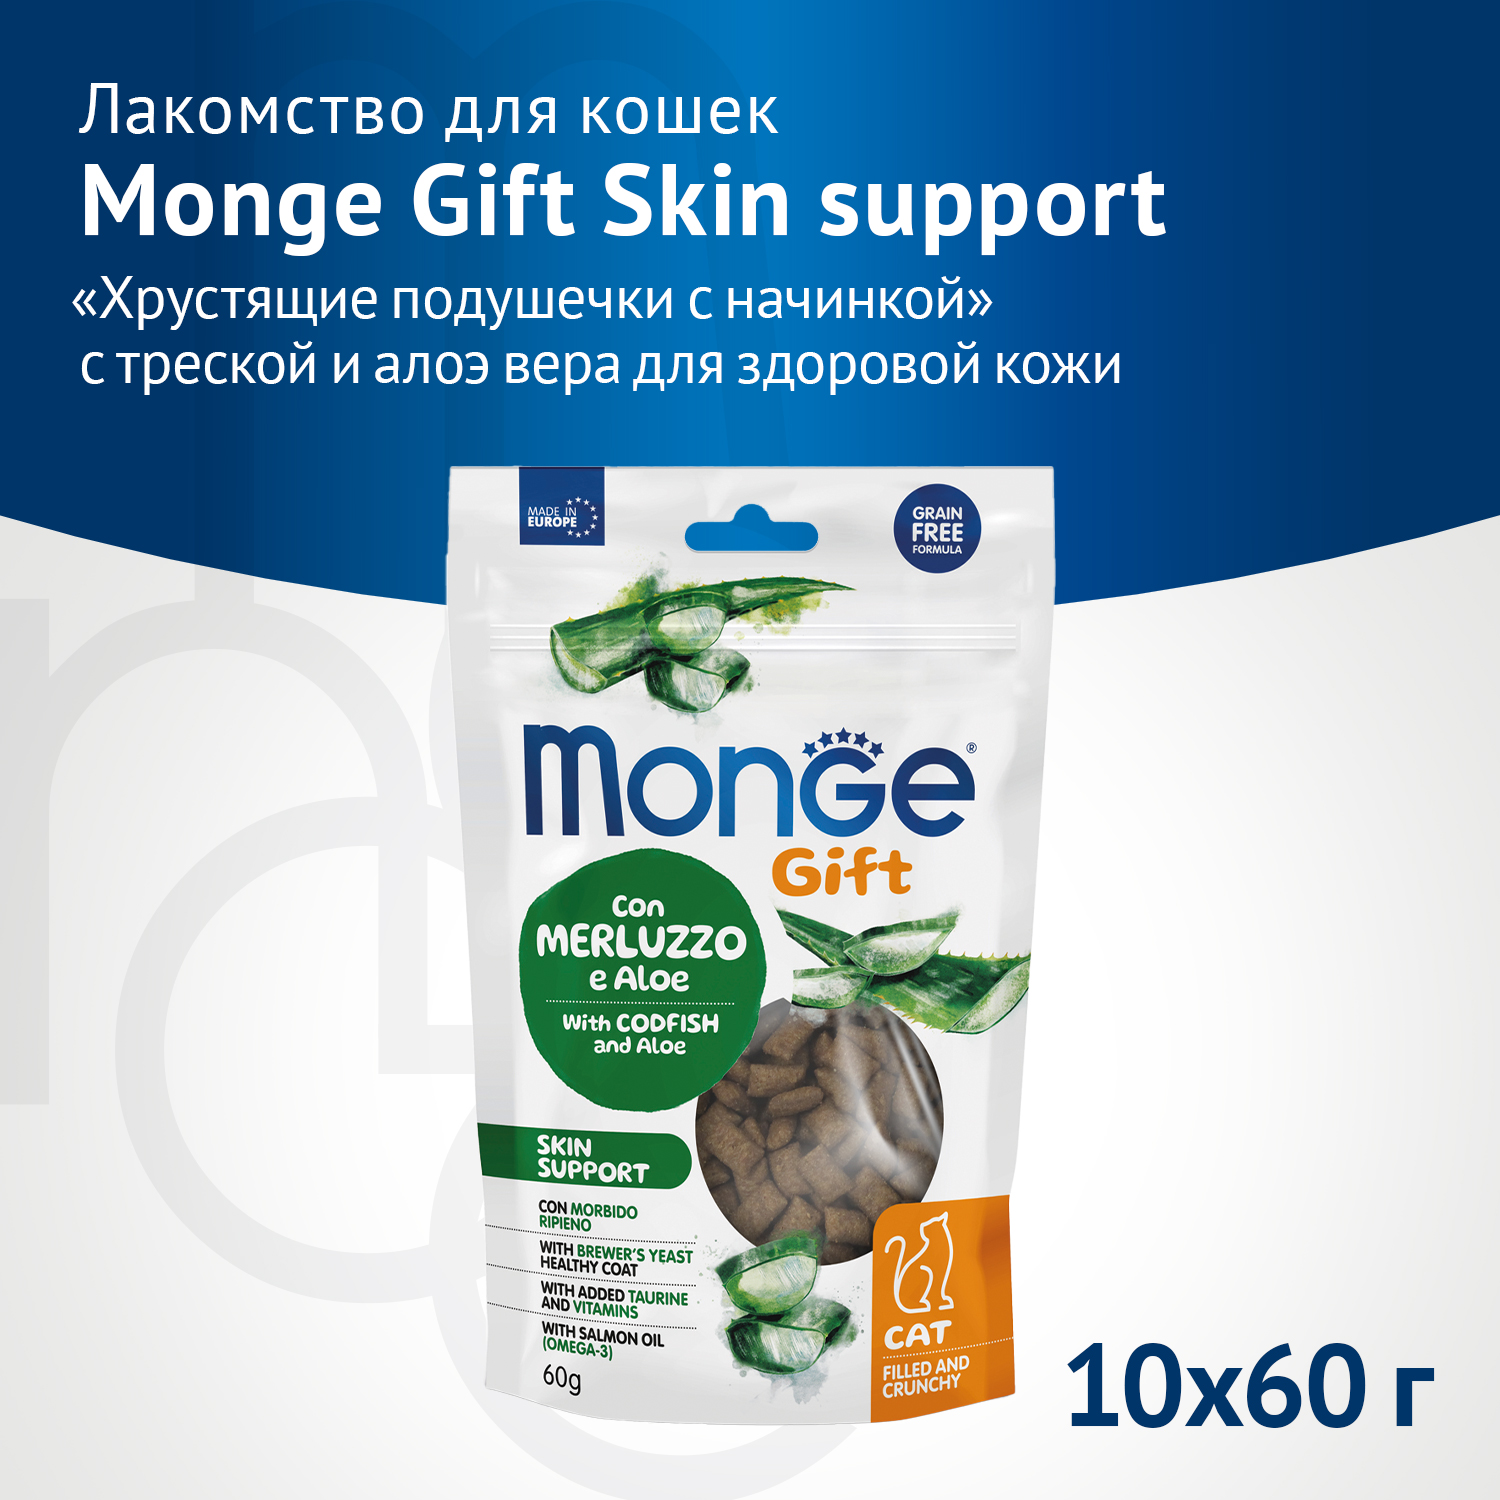 Лакомство Monge Gift Skin support для кошек "Хрустящие подушечки с начинкой" с треской и алоэ вера для здоровой кожи 60 г